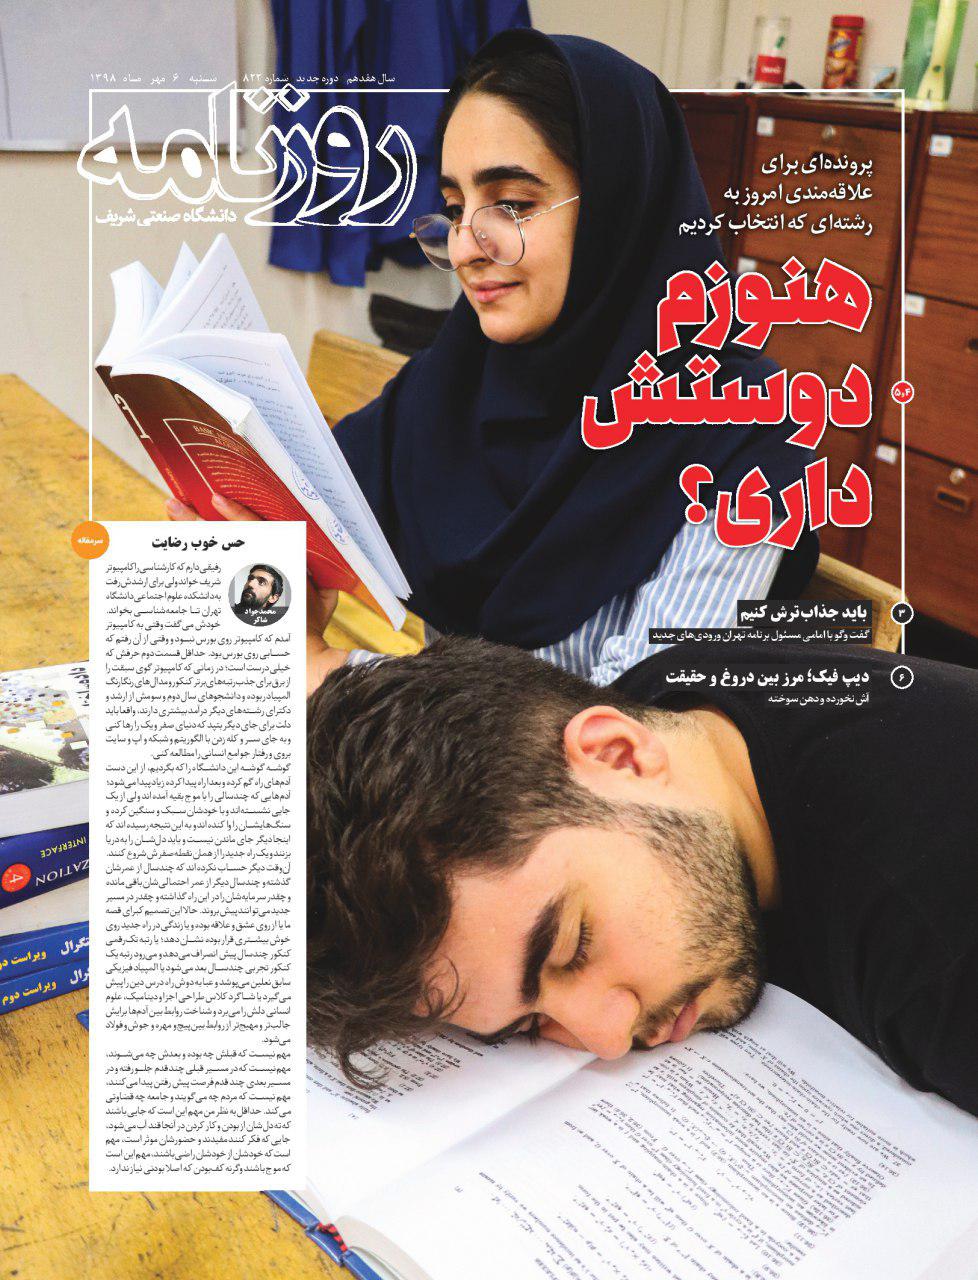 هنوزم دوسش داری؟ / شماره ۸۲۲ نشریه دانشجویی《روزنامه شریف》 منتشر شد.